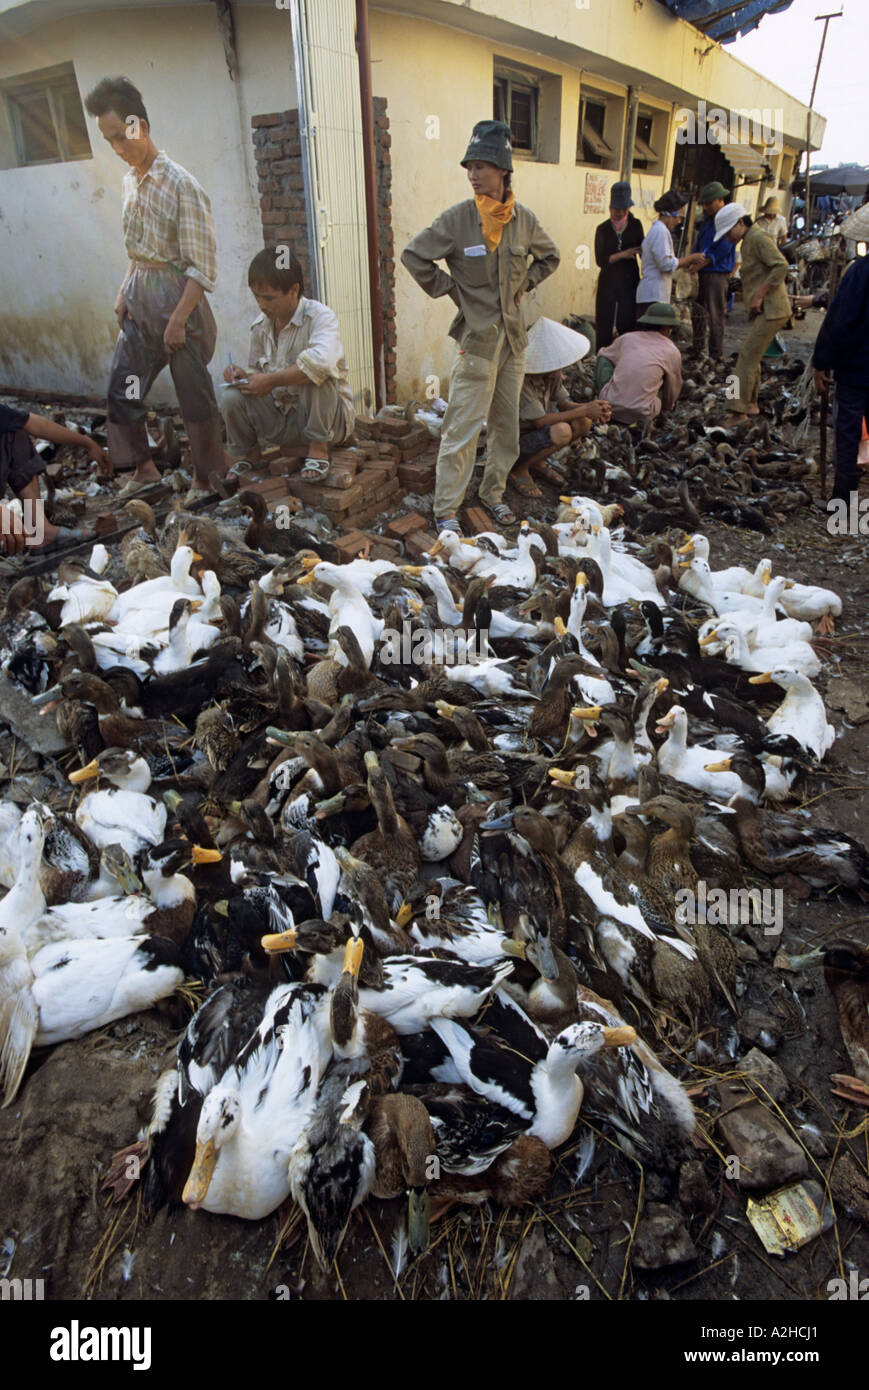 Volailles destinées à la vente, marché de Long Bien, Hanoi, Vietnam. À partir de la page sur la grippe aviaire en Asie. Banque D'Images